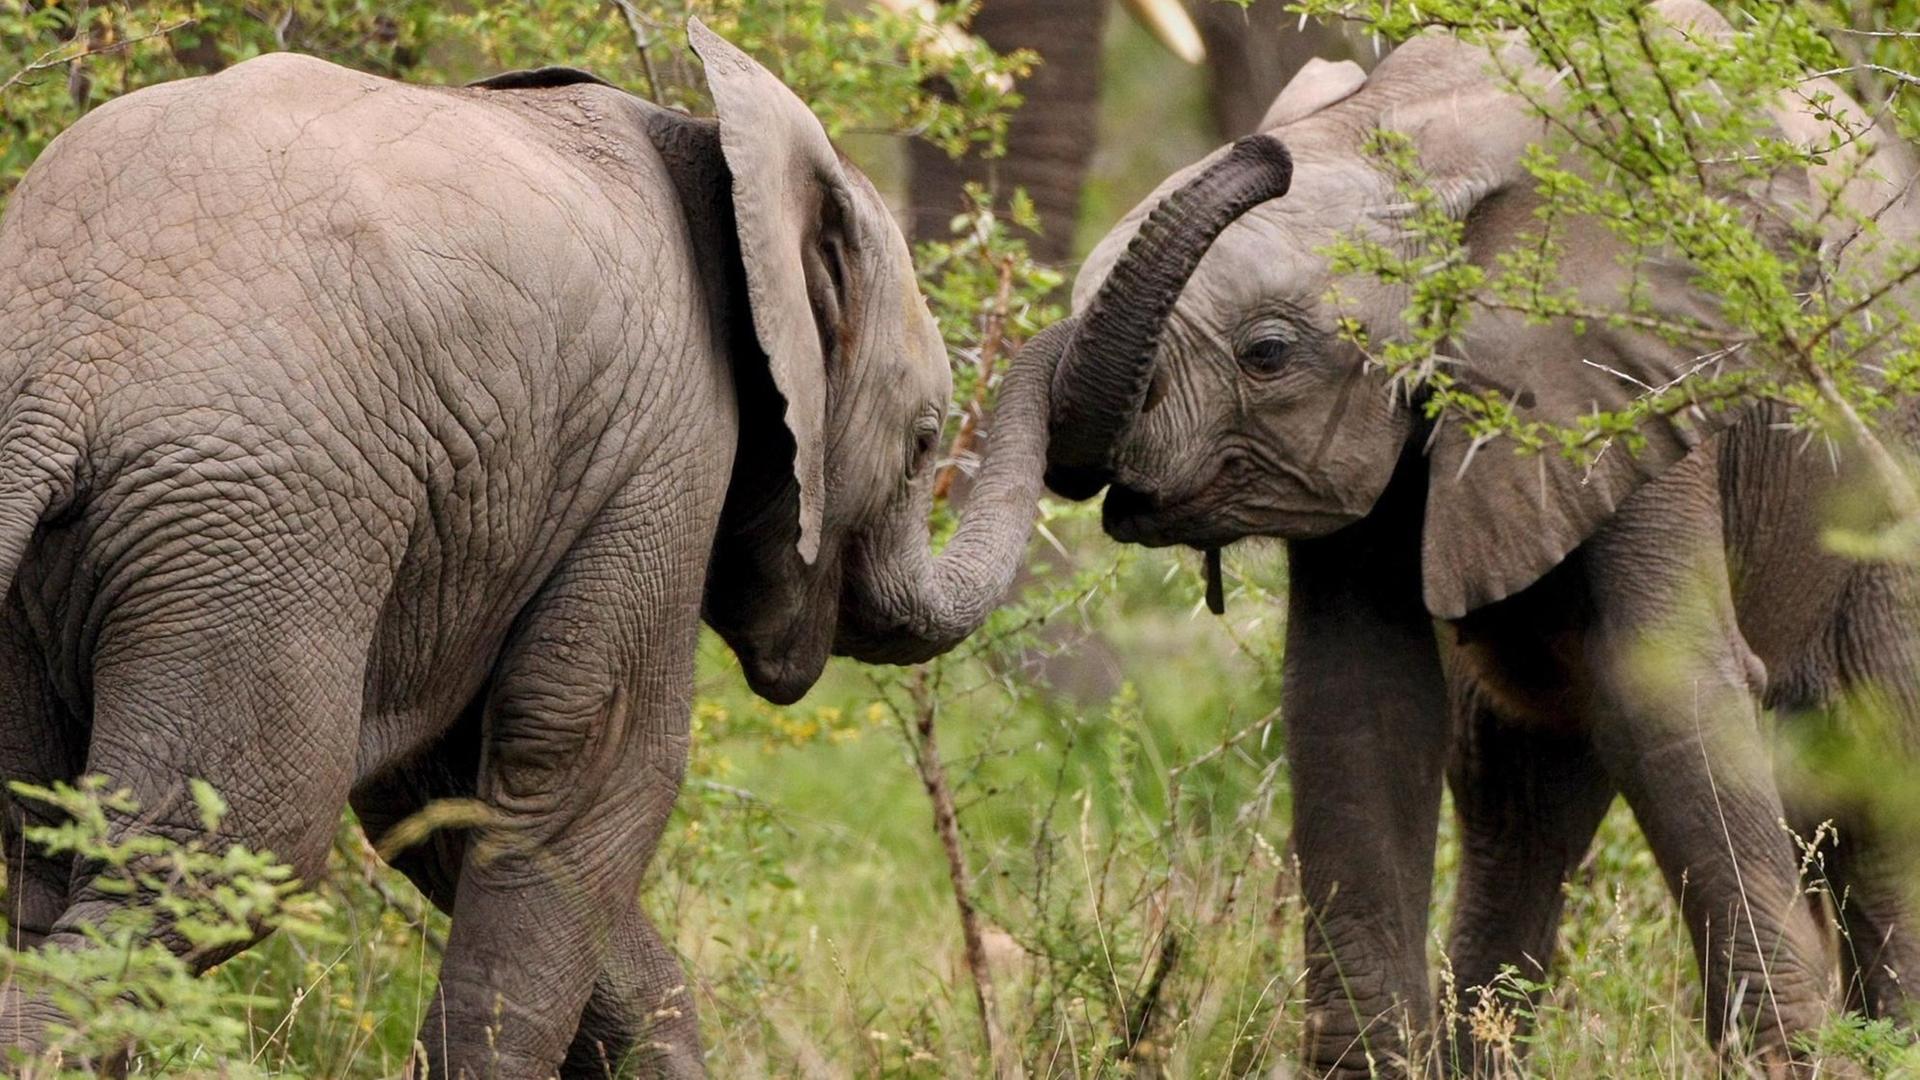 Zwei Baby-Elefanten gesehen und 2007 im Limpopo Transfrontier Park picture-alliance/ dpa | Jon_Hrusa